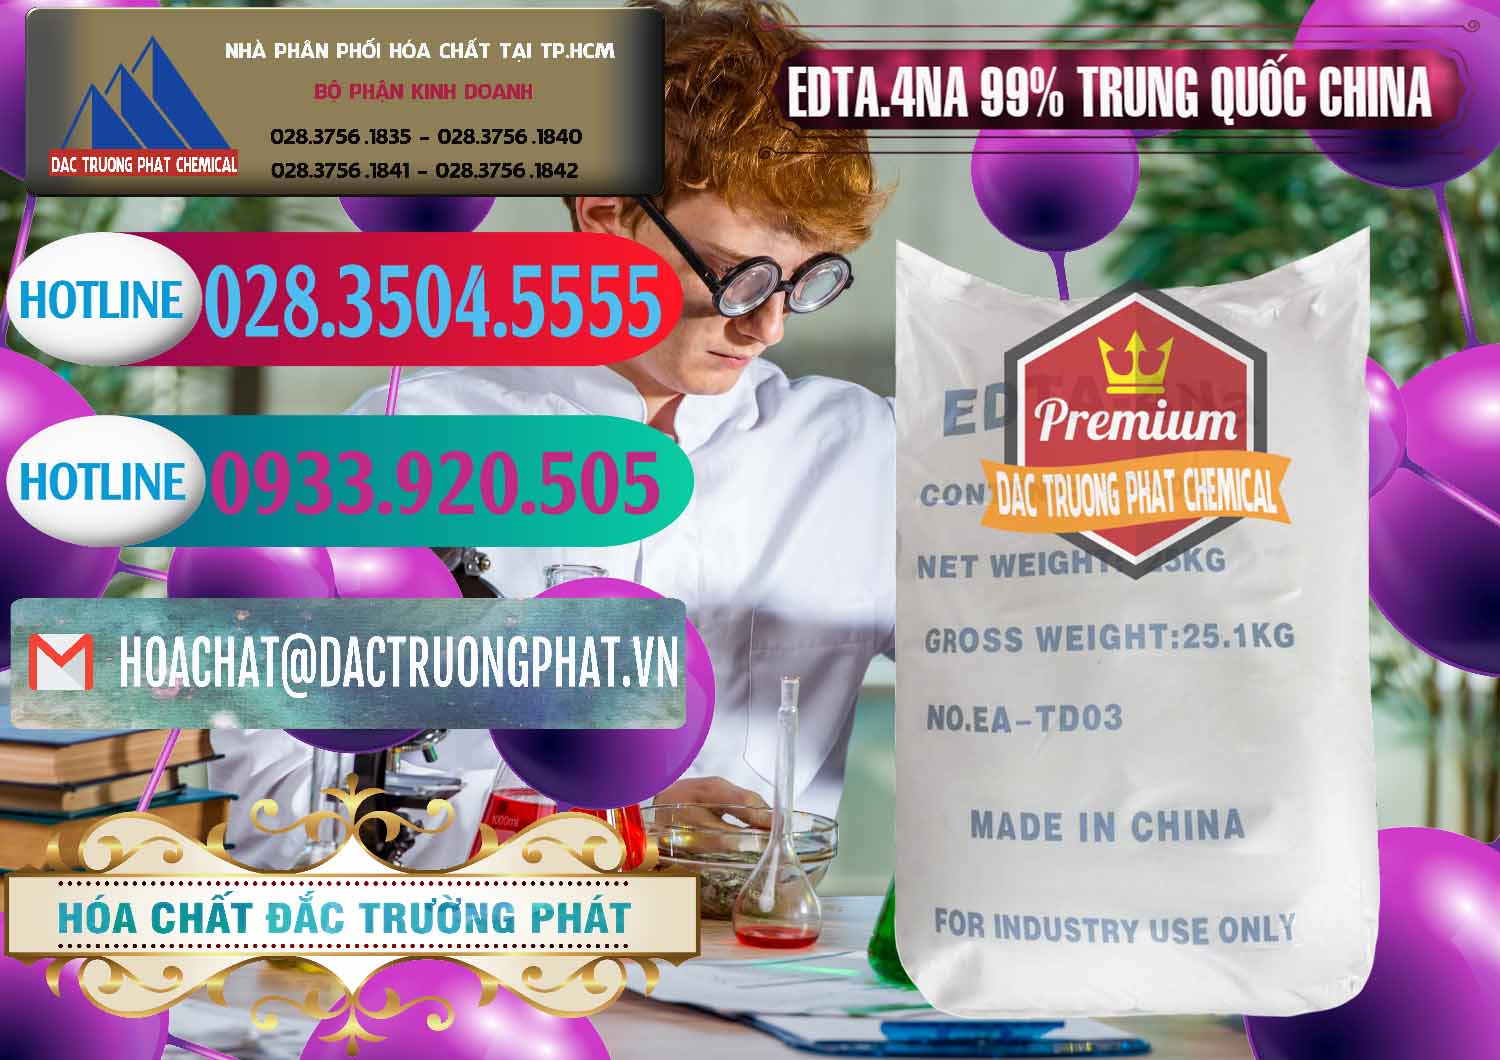 Cty chuyên bán _ cung cấp EDTA.4NA - EDTA Muối 99% Trung Quốc China - 0292 - Cty chuyên kinh doanh và cung cấp hóa chất tại TP.HCM - truongphat.vn